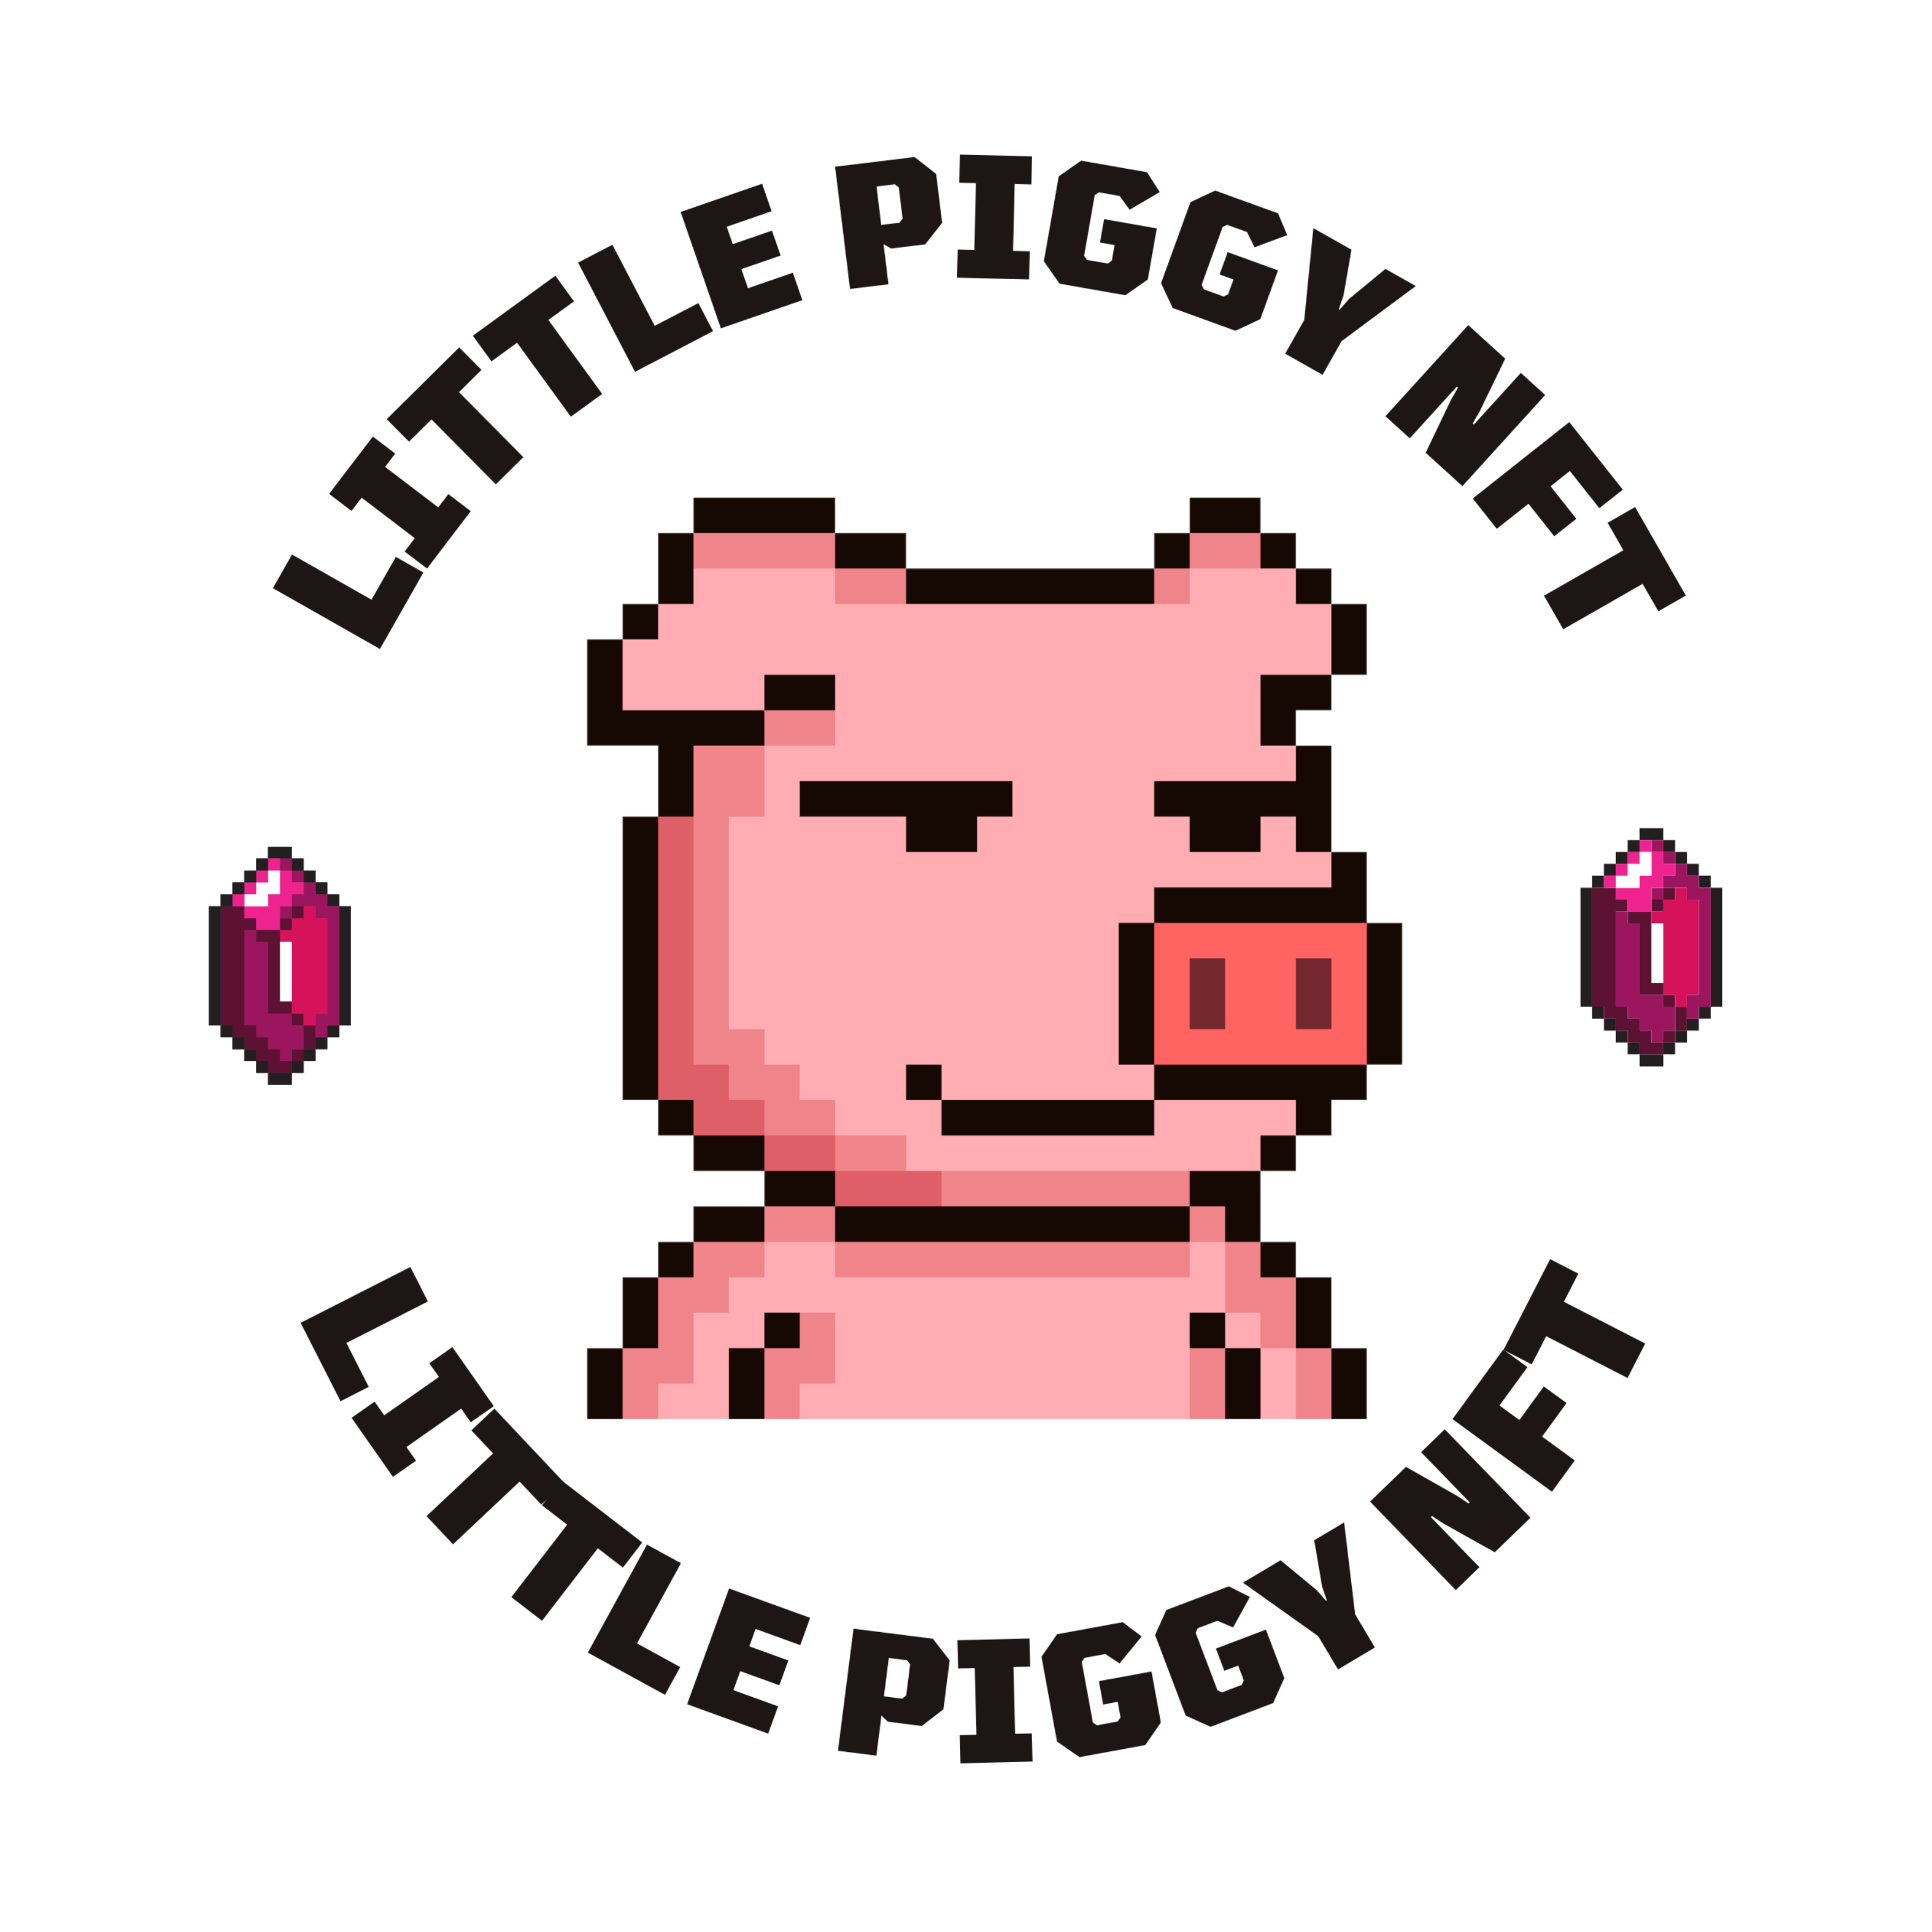 The Little Piggy